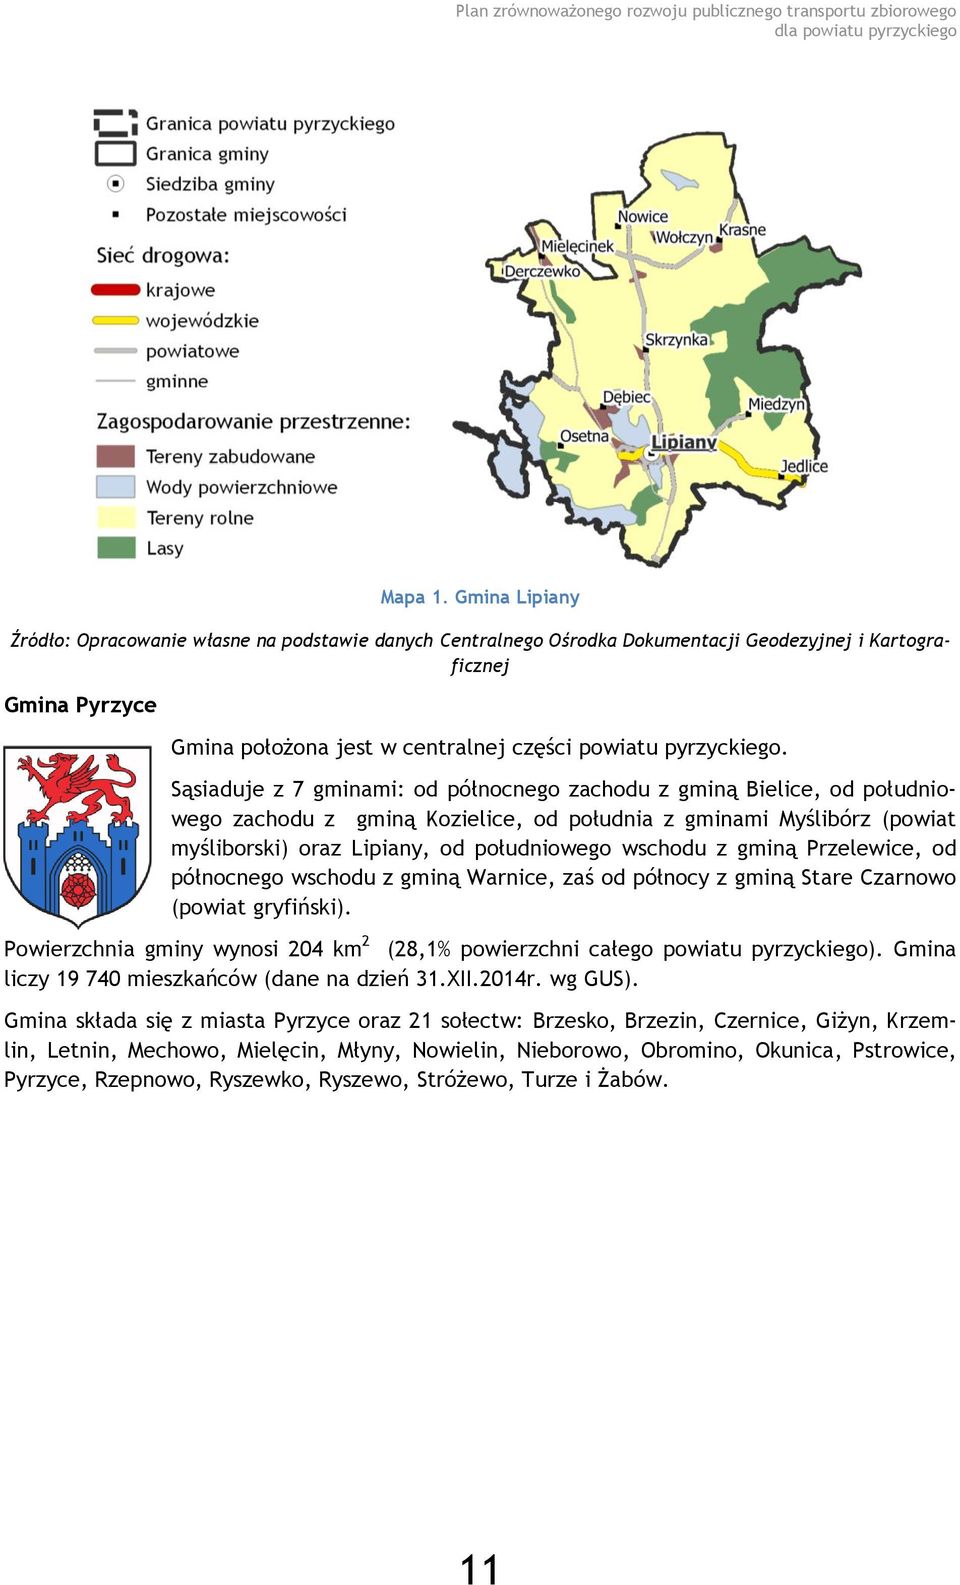 Sąsiaduje z 7 gminami: od północnego zachodu z gminą Bielice, od południowego zachodu z gminą Kozielice, od południa z gminami Myślibórz (powiat myśliborski) oraz Lipiany, od południowego wschodu z